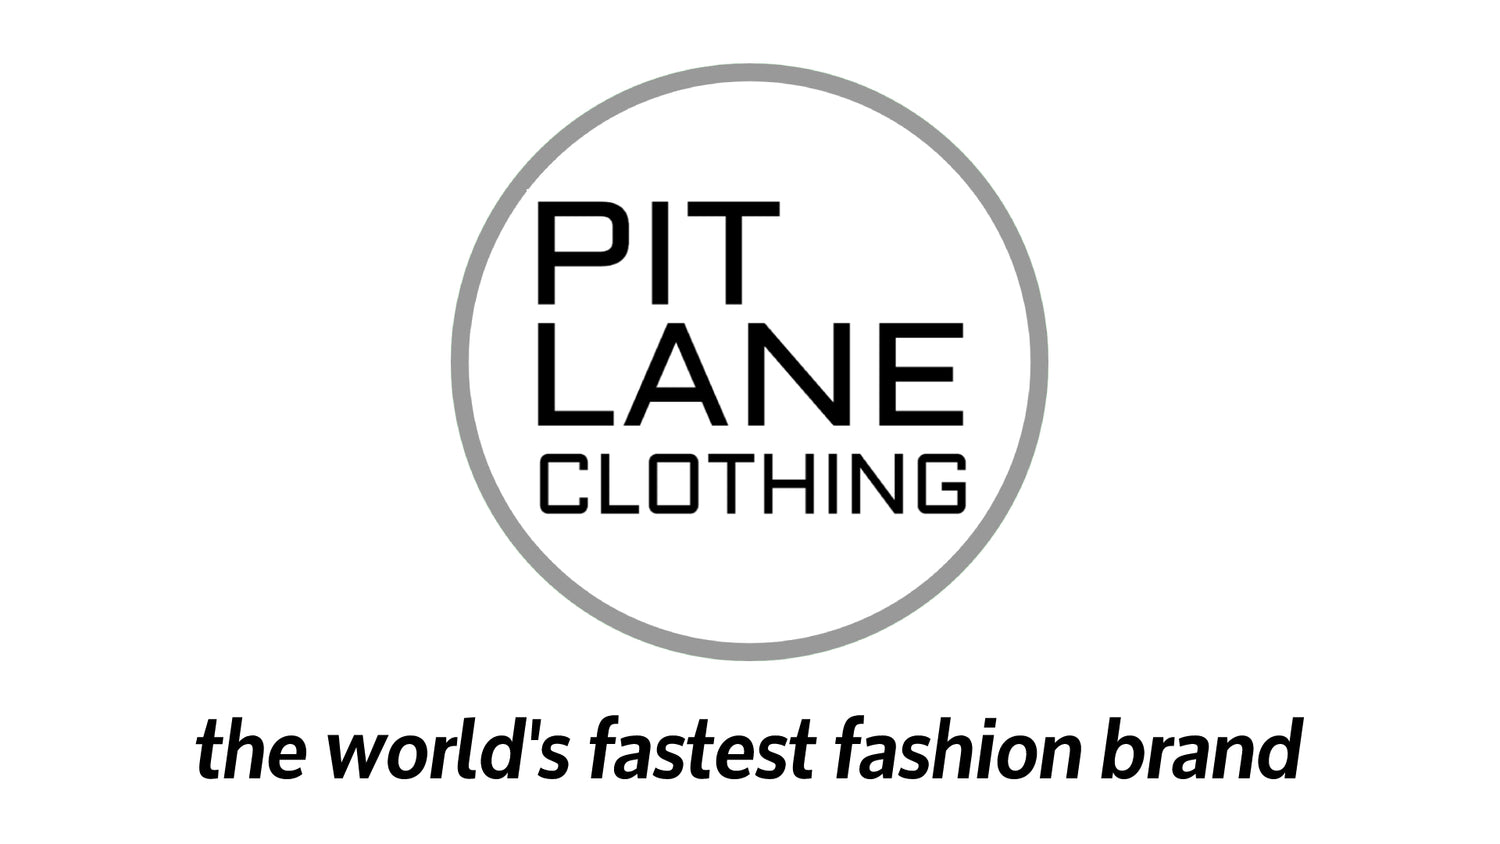 PIT LANE clothing